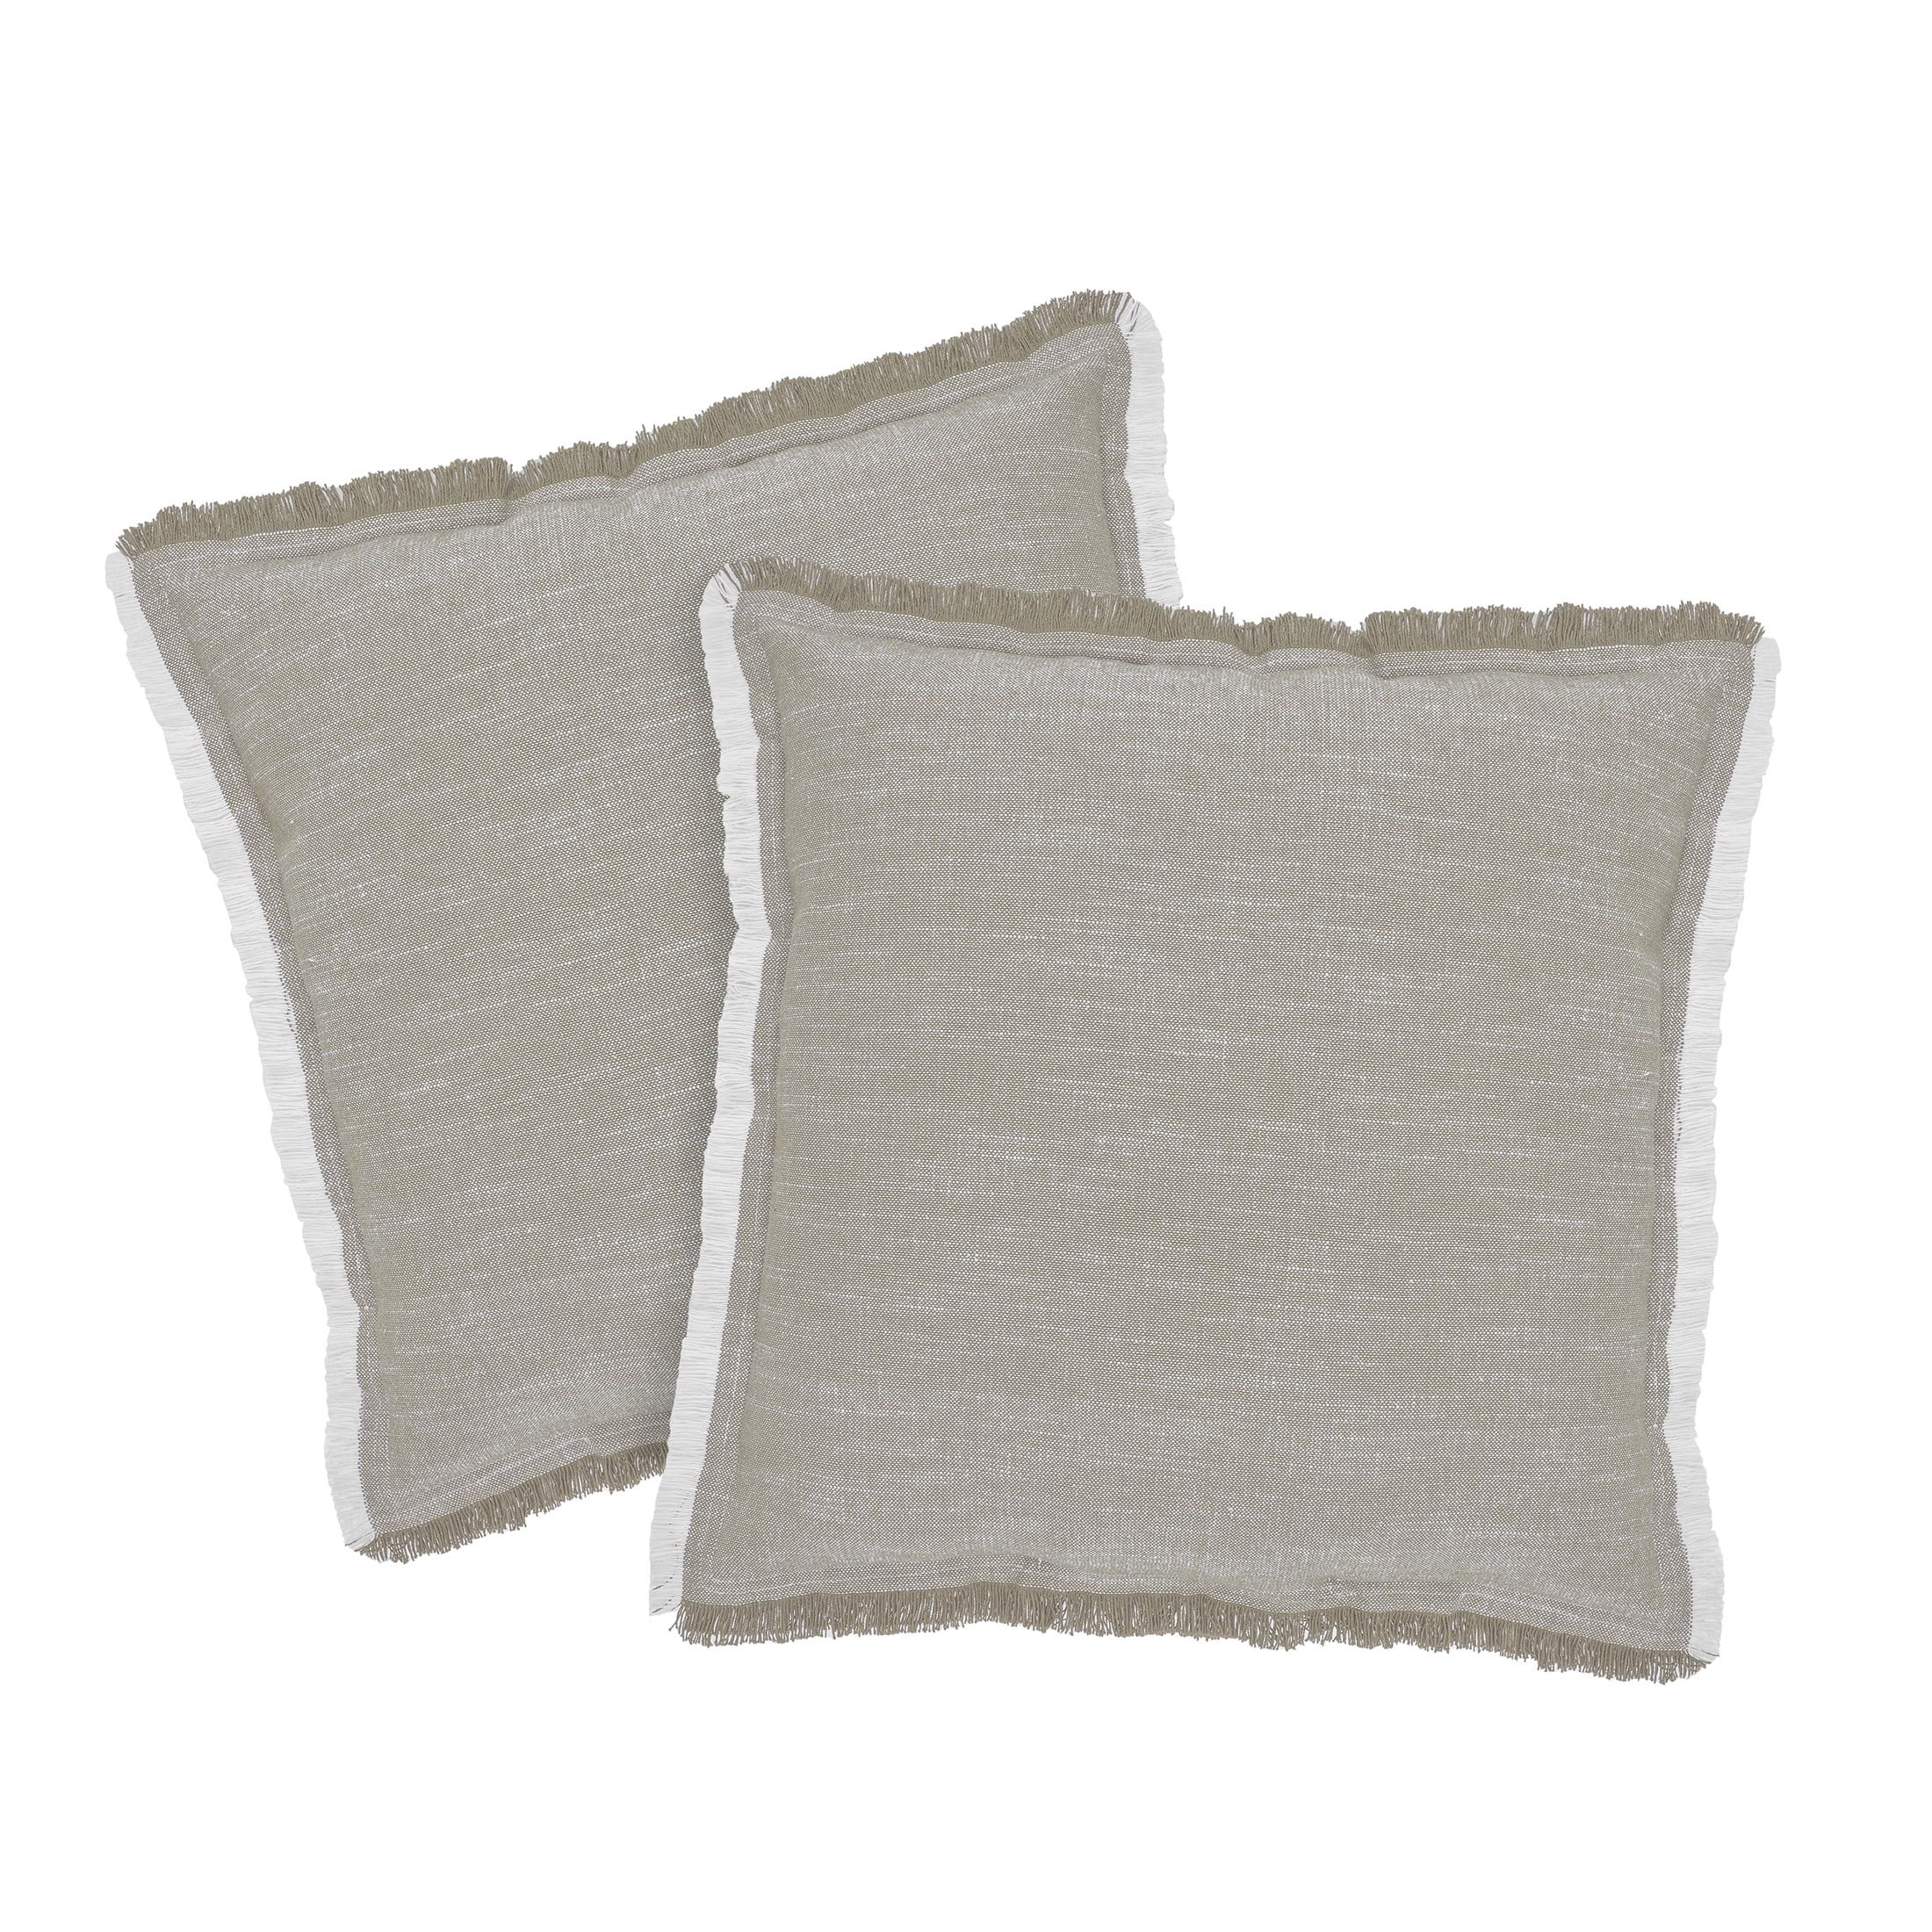 Better Homes & Gardens 20" x 20" Linen Taupe Cotton Decorative Pillows (2 Count) - Walmart.com | Walmart (US)